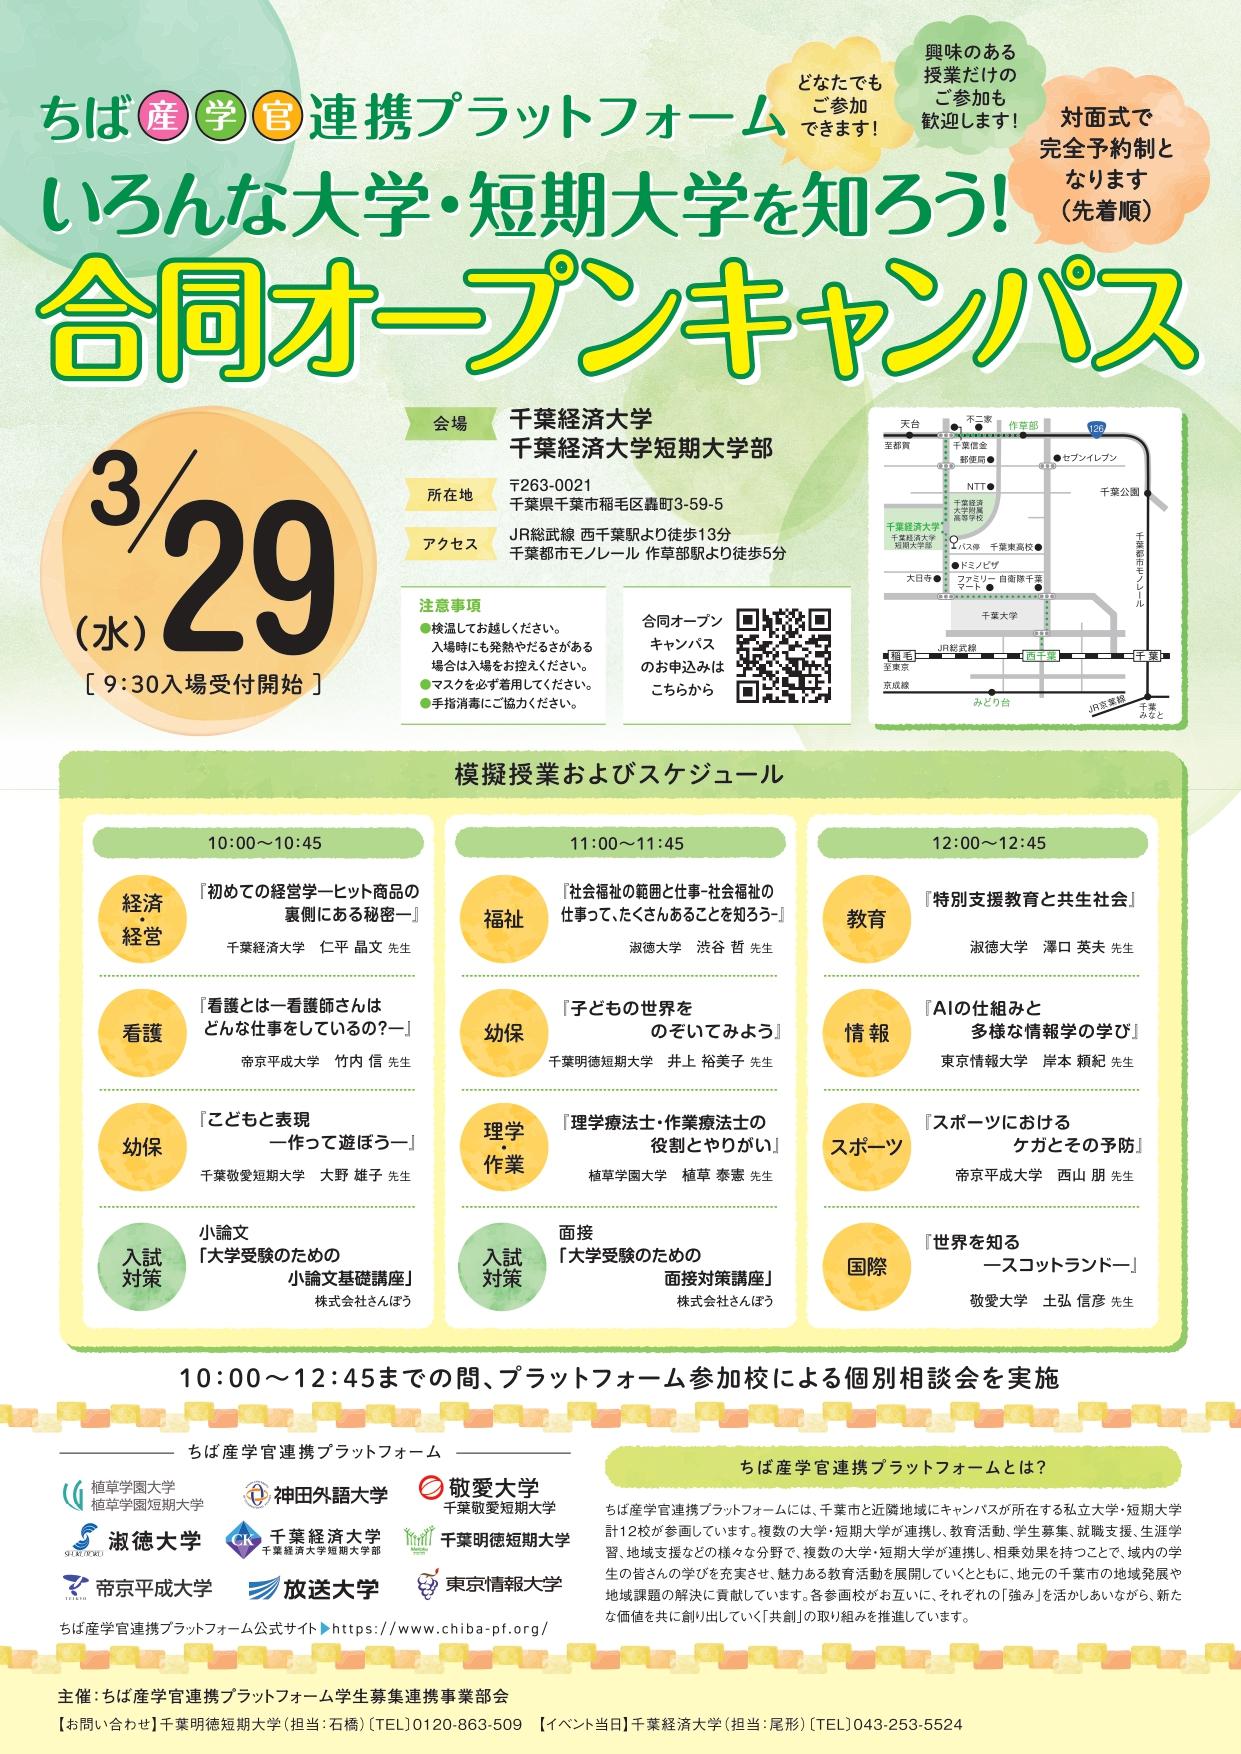 帝京平成大学が参加するちば産学官連携プラットフォームが3月29日に「いろんな大学・短期大学を知ろう！合同オープンキャンパス」を開催